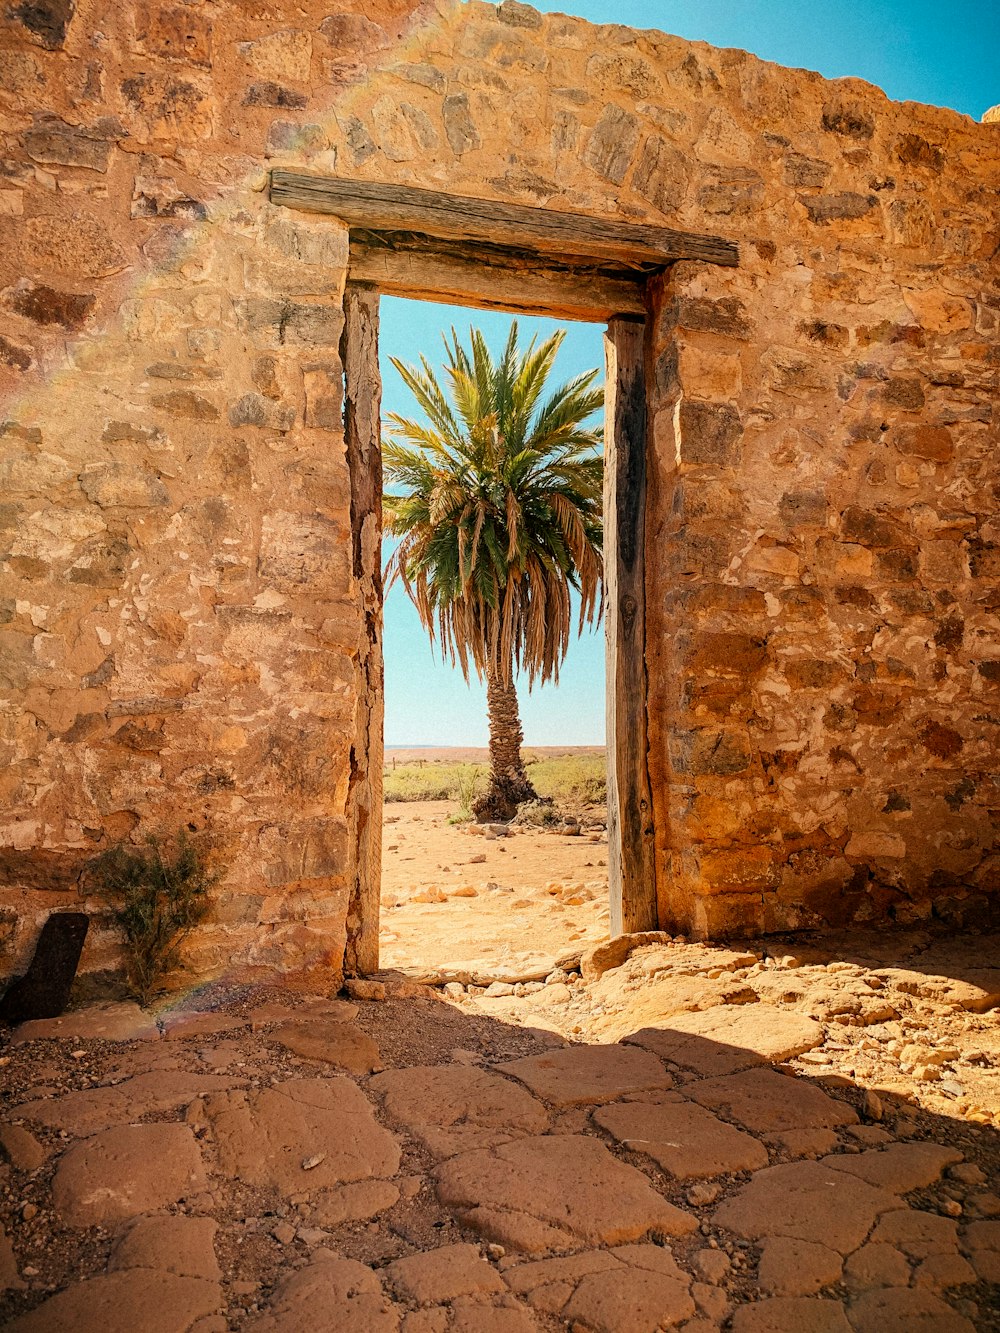 Eine Palme ist durch eine offene Tür zu sehen